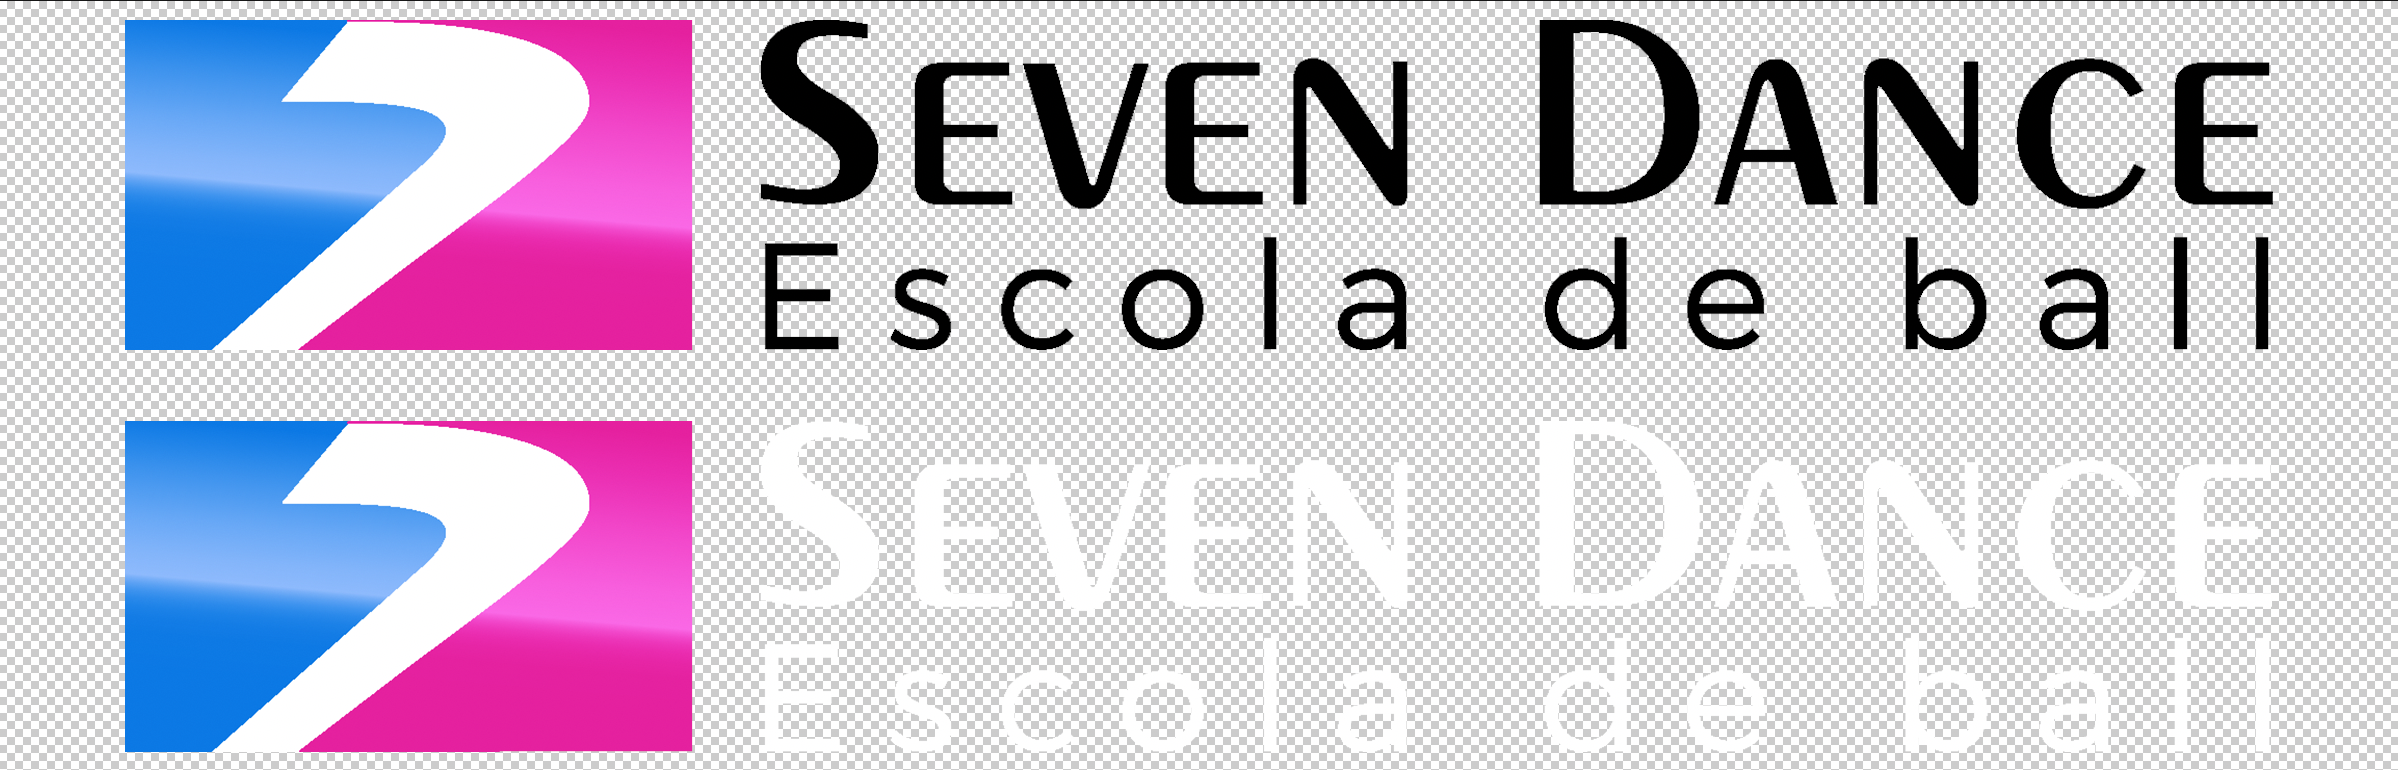 Logo horizontal Seven Dance escuelas de baile